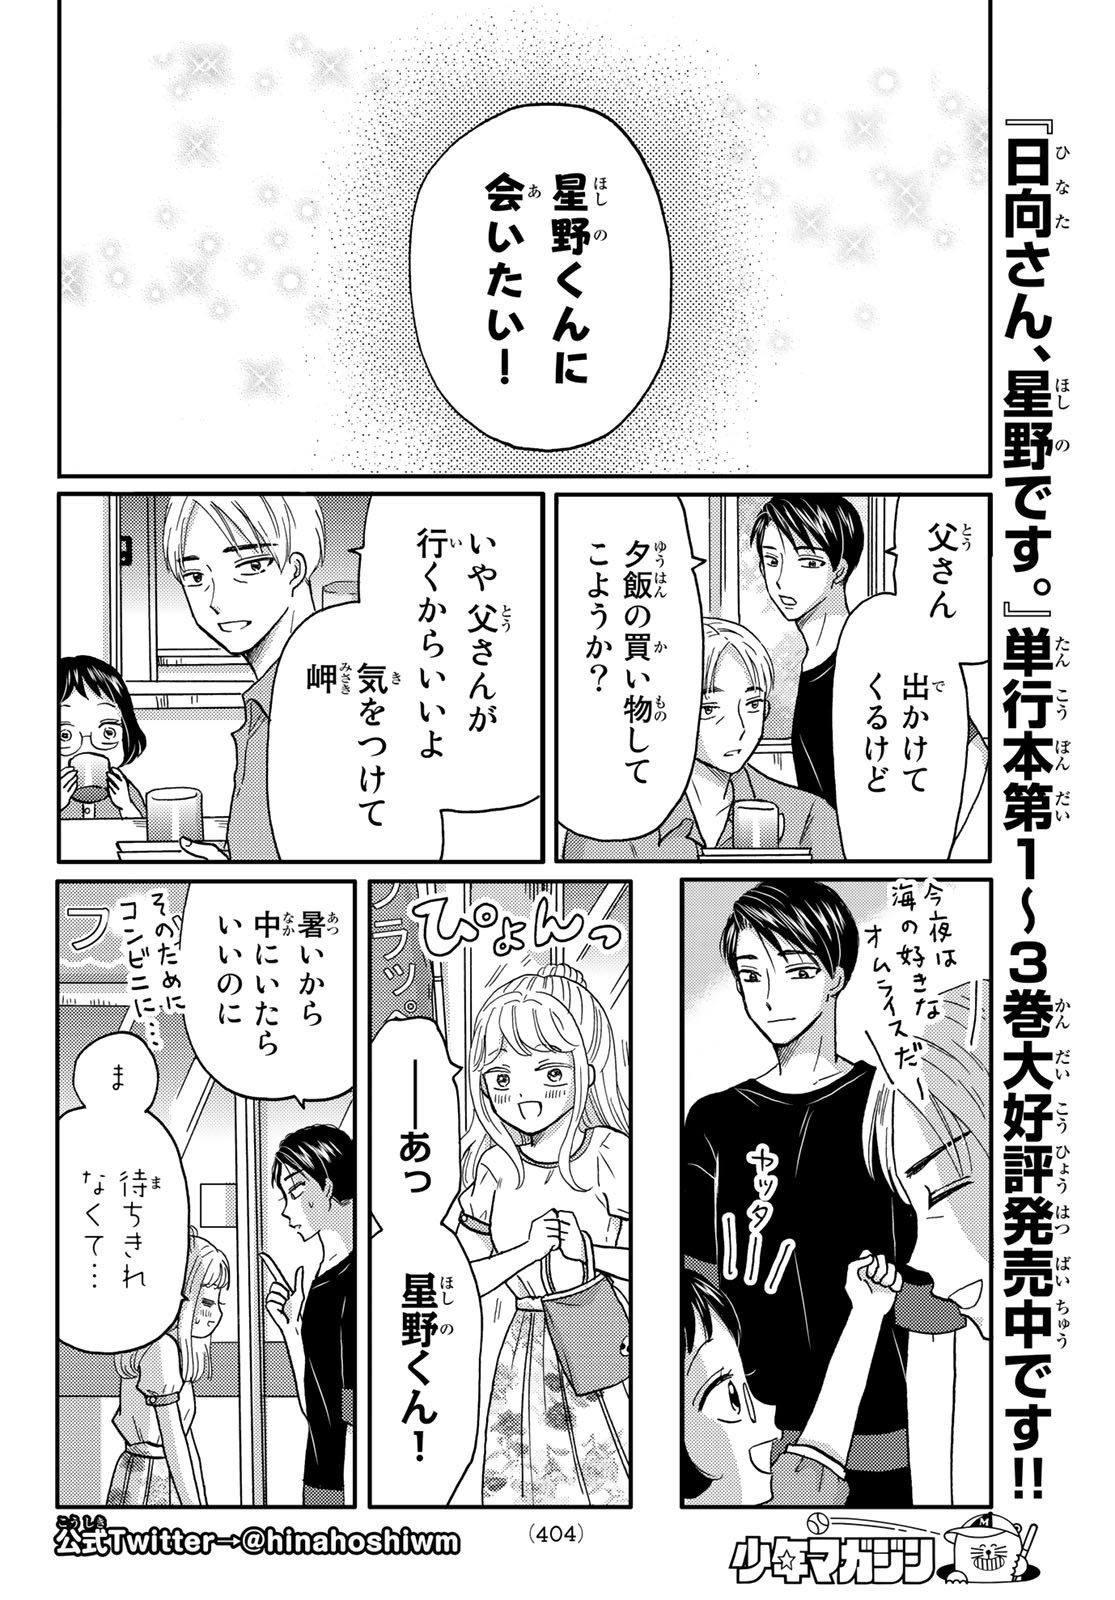 Hinata-san, Hoshino desu. - Chapter Final - Page 2